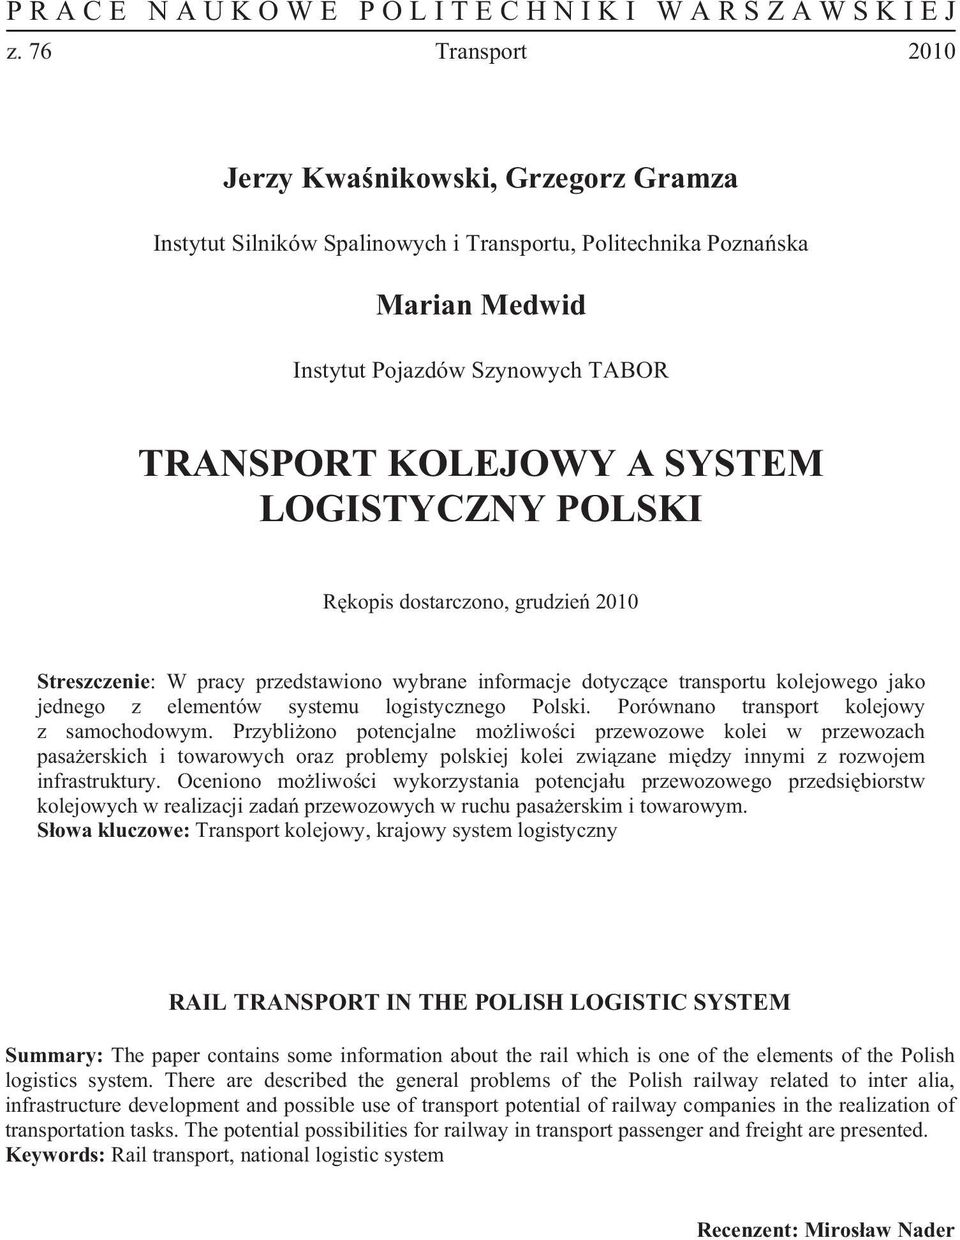 Przybli ono potencjalne mo liwo ci przewozowe kolei w przewozach pasa erskich i towarowych oraz problemy polskiej kolei zwi zane mi dzy innymi z rozwojem infrastruktury.